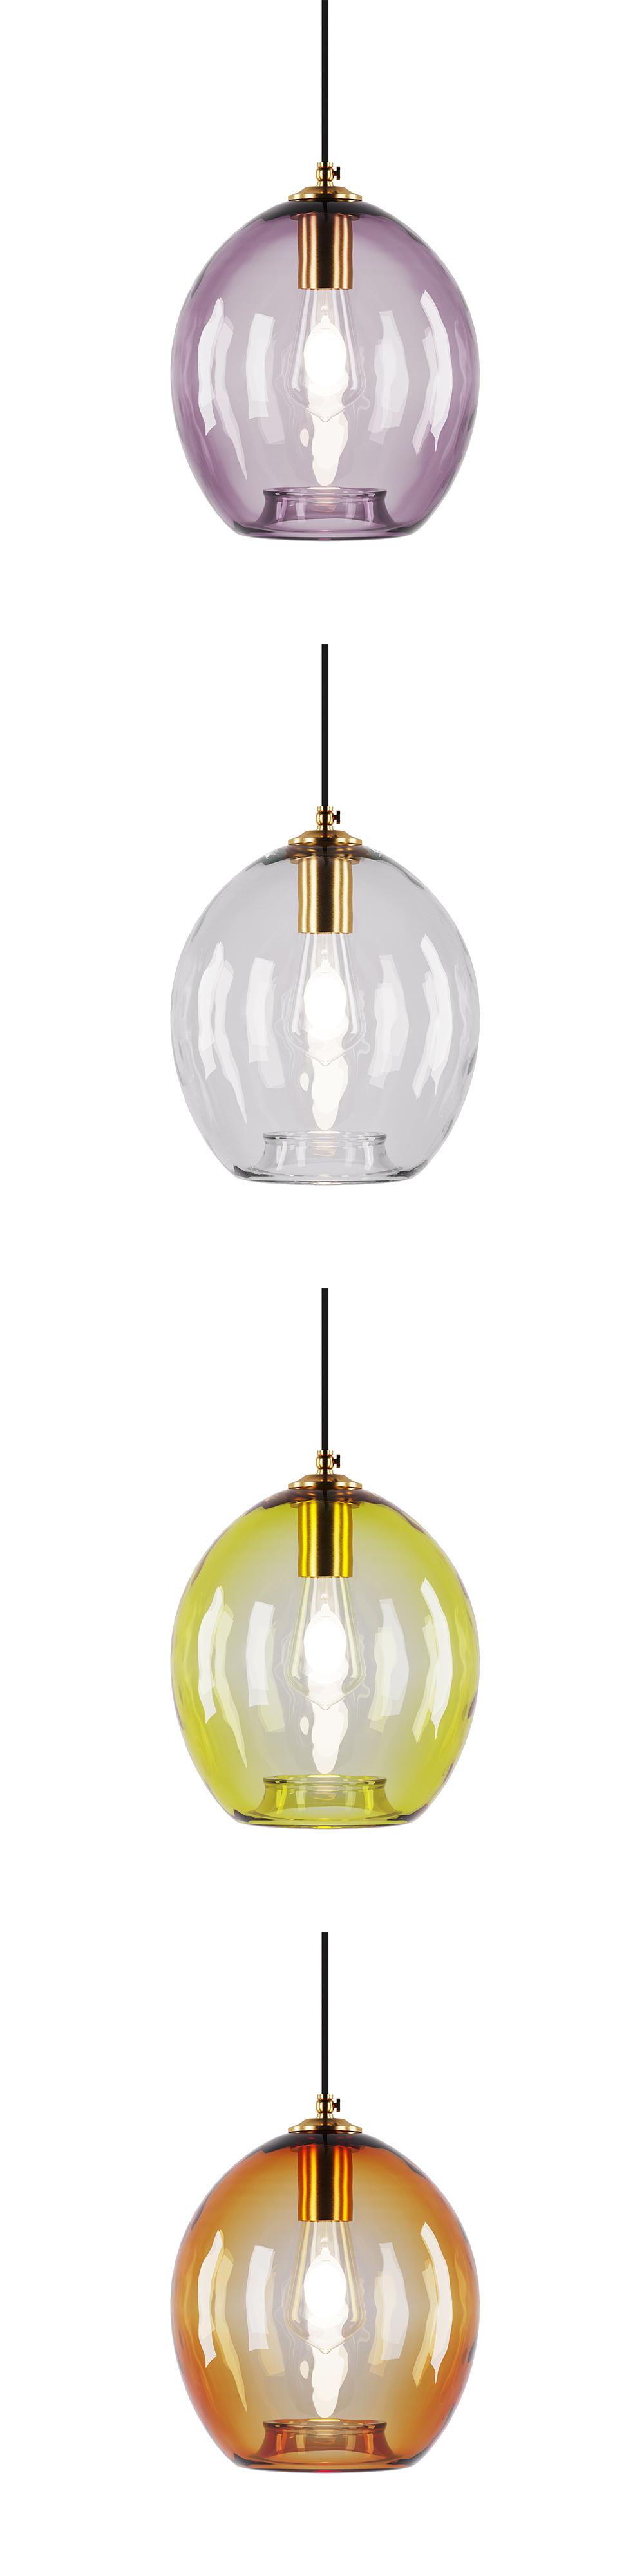 Colorglas lamp, SKU. 2059 by Pikartlights 3d model